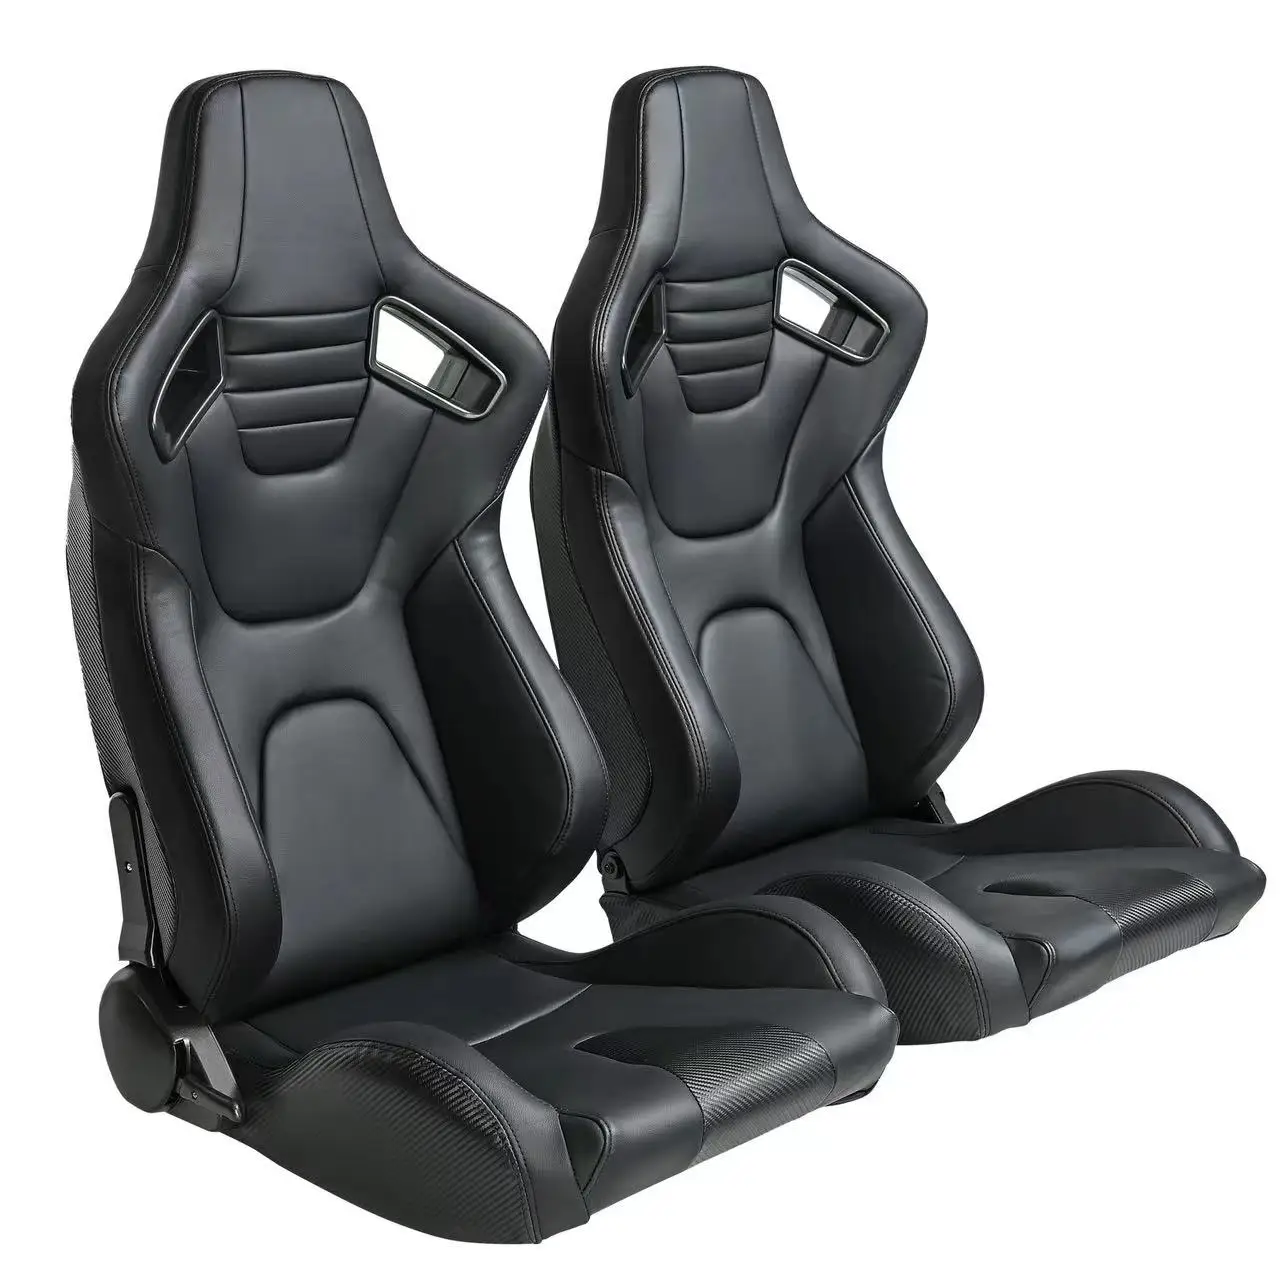 שחור PVC פחמן נראה כפול עם המחוון יחיד מתאם עבור הרכב הרכב להשתמש ספורט מרוצי מושב